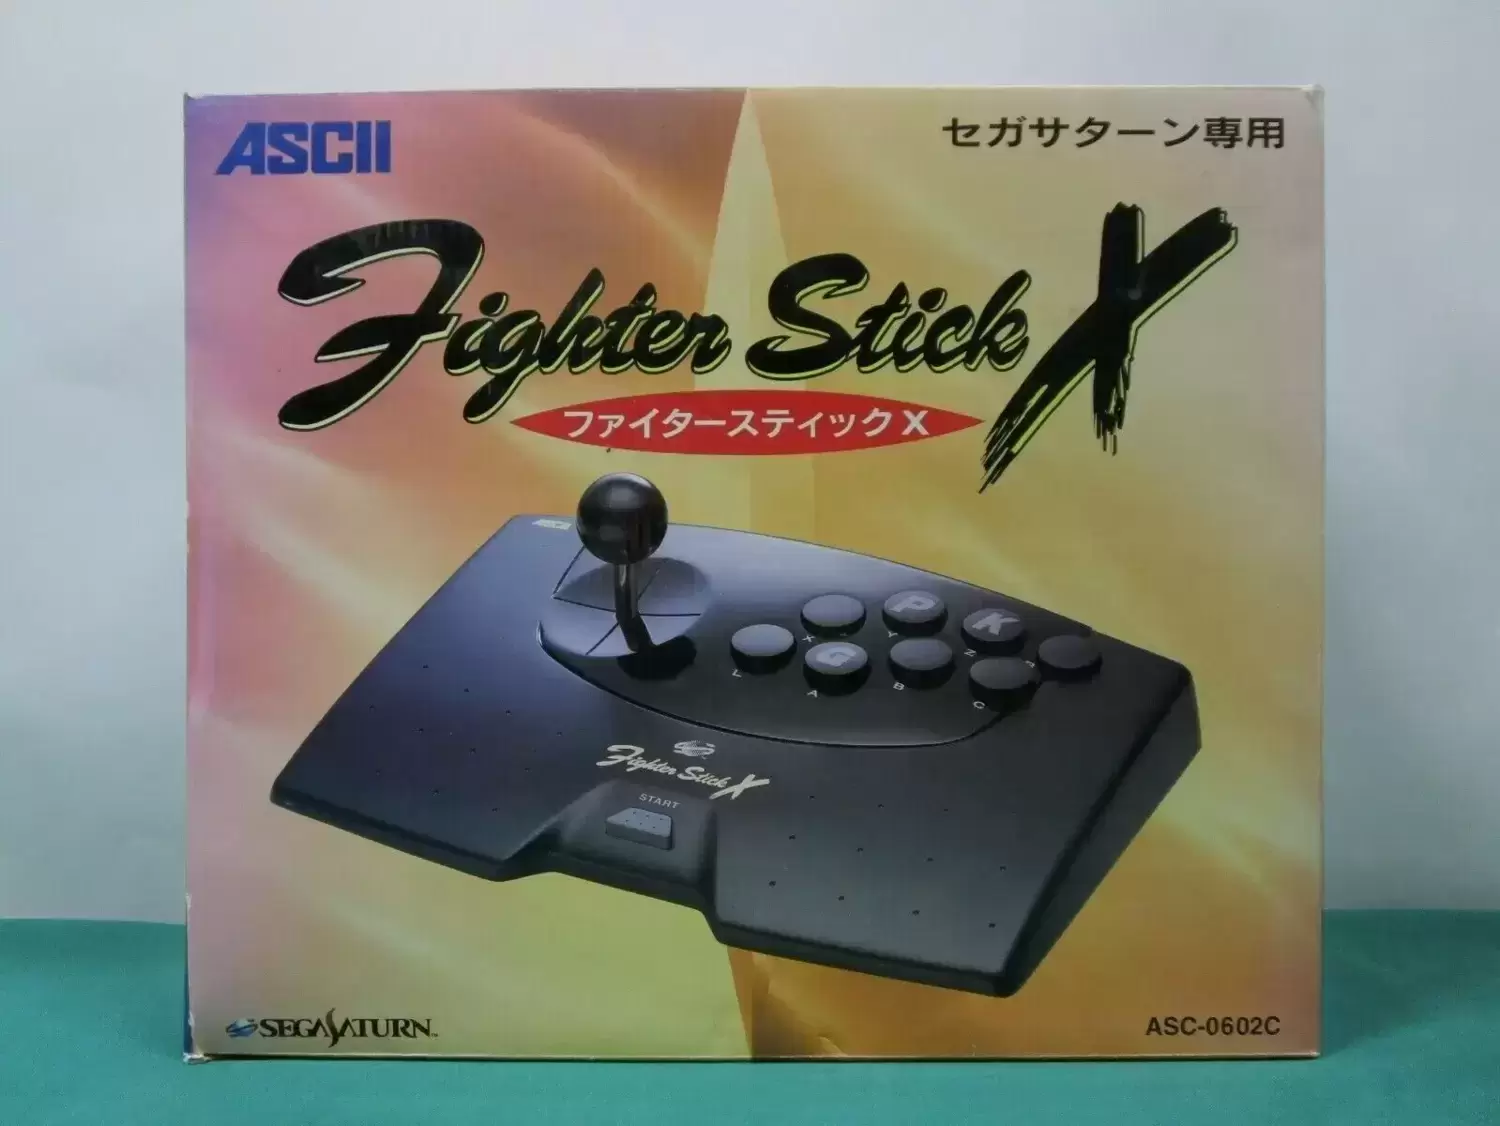 Arcade Stick - ASCII Fighter Stick X